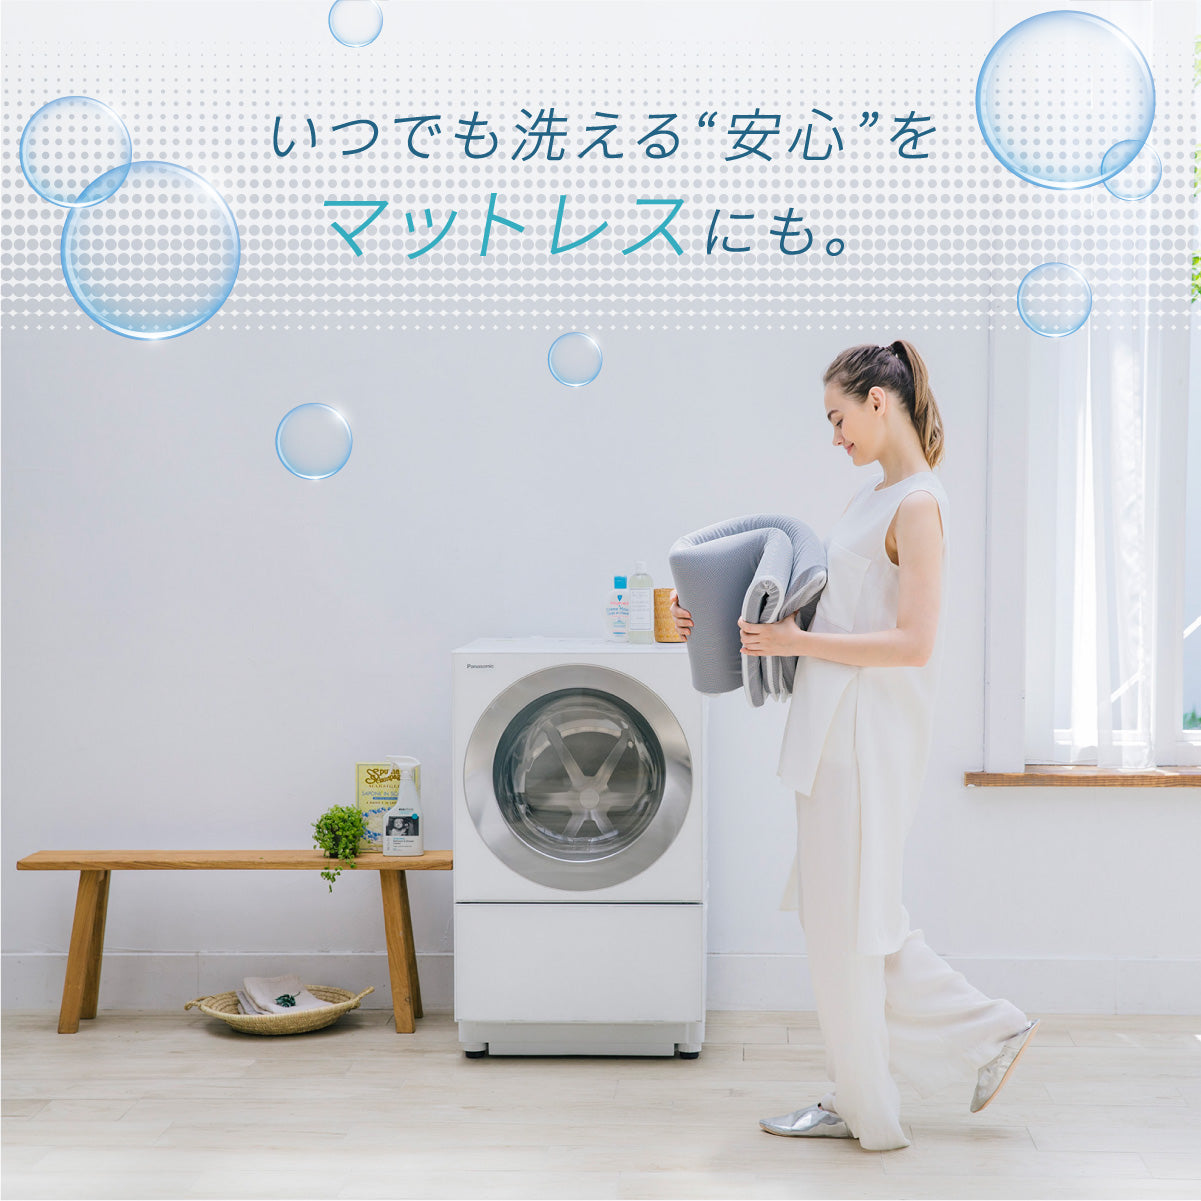 【日本製 洗える高性能ウレタンで清潔＆長持ち】エアウォッシュマットレス